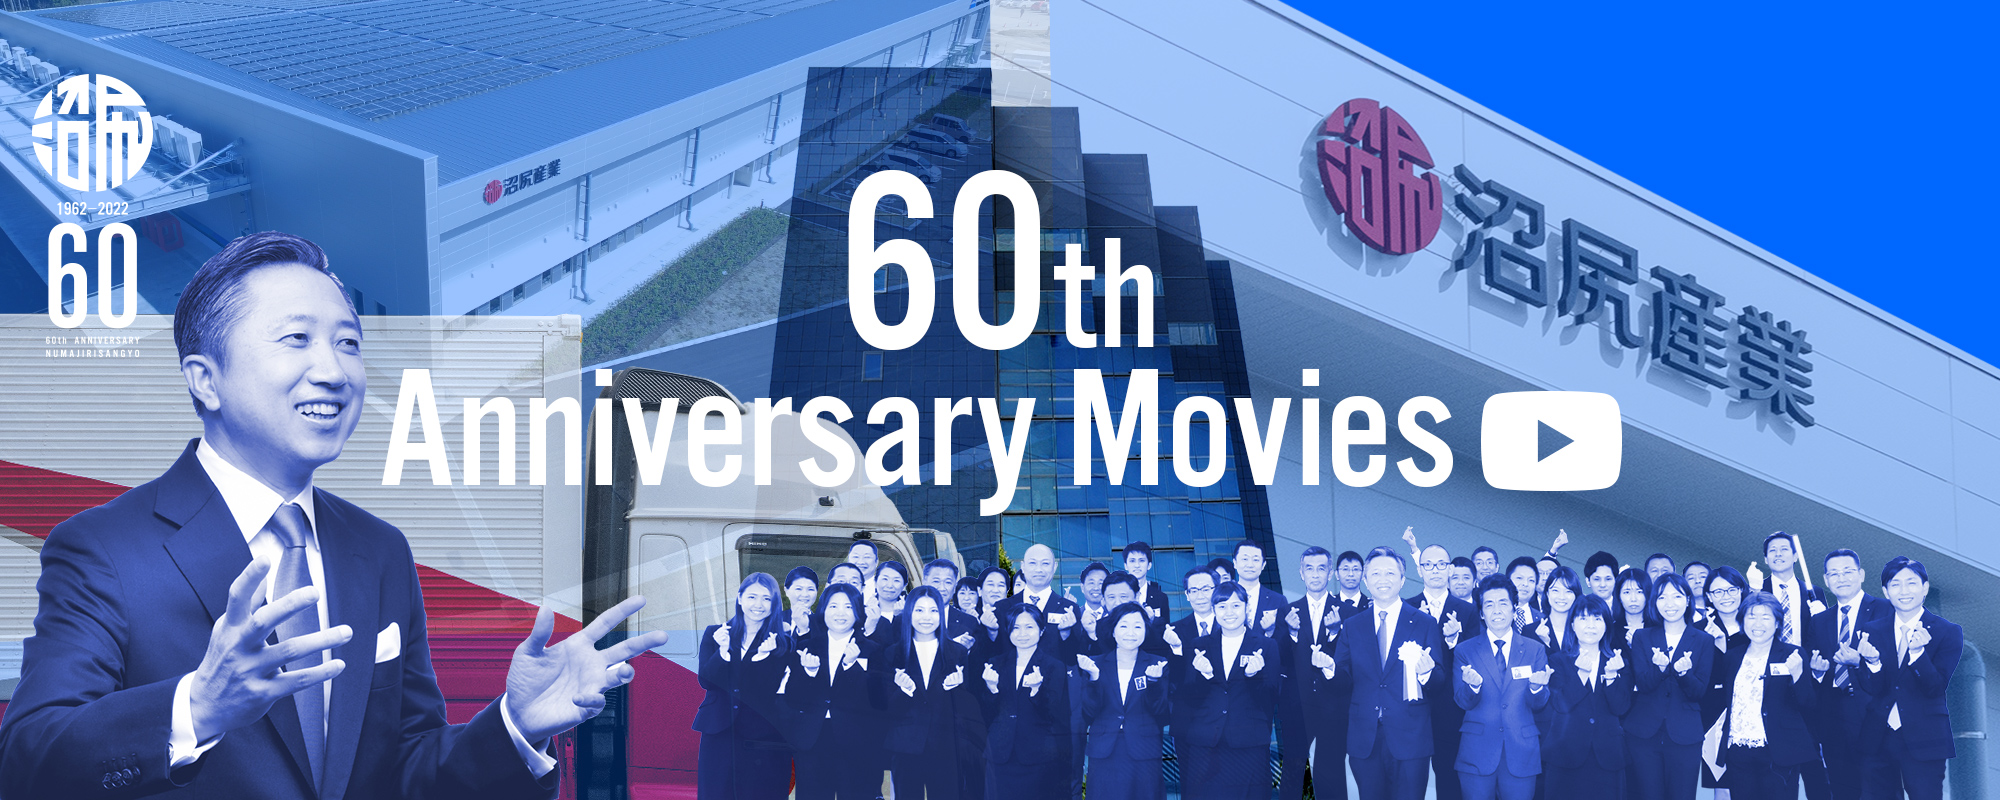 60th Anniversary Movies 次の10年へ はじまってます、私たちのチャレンジ。